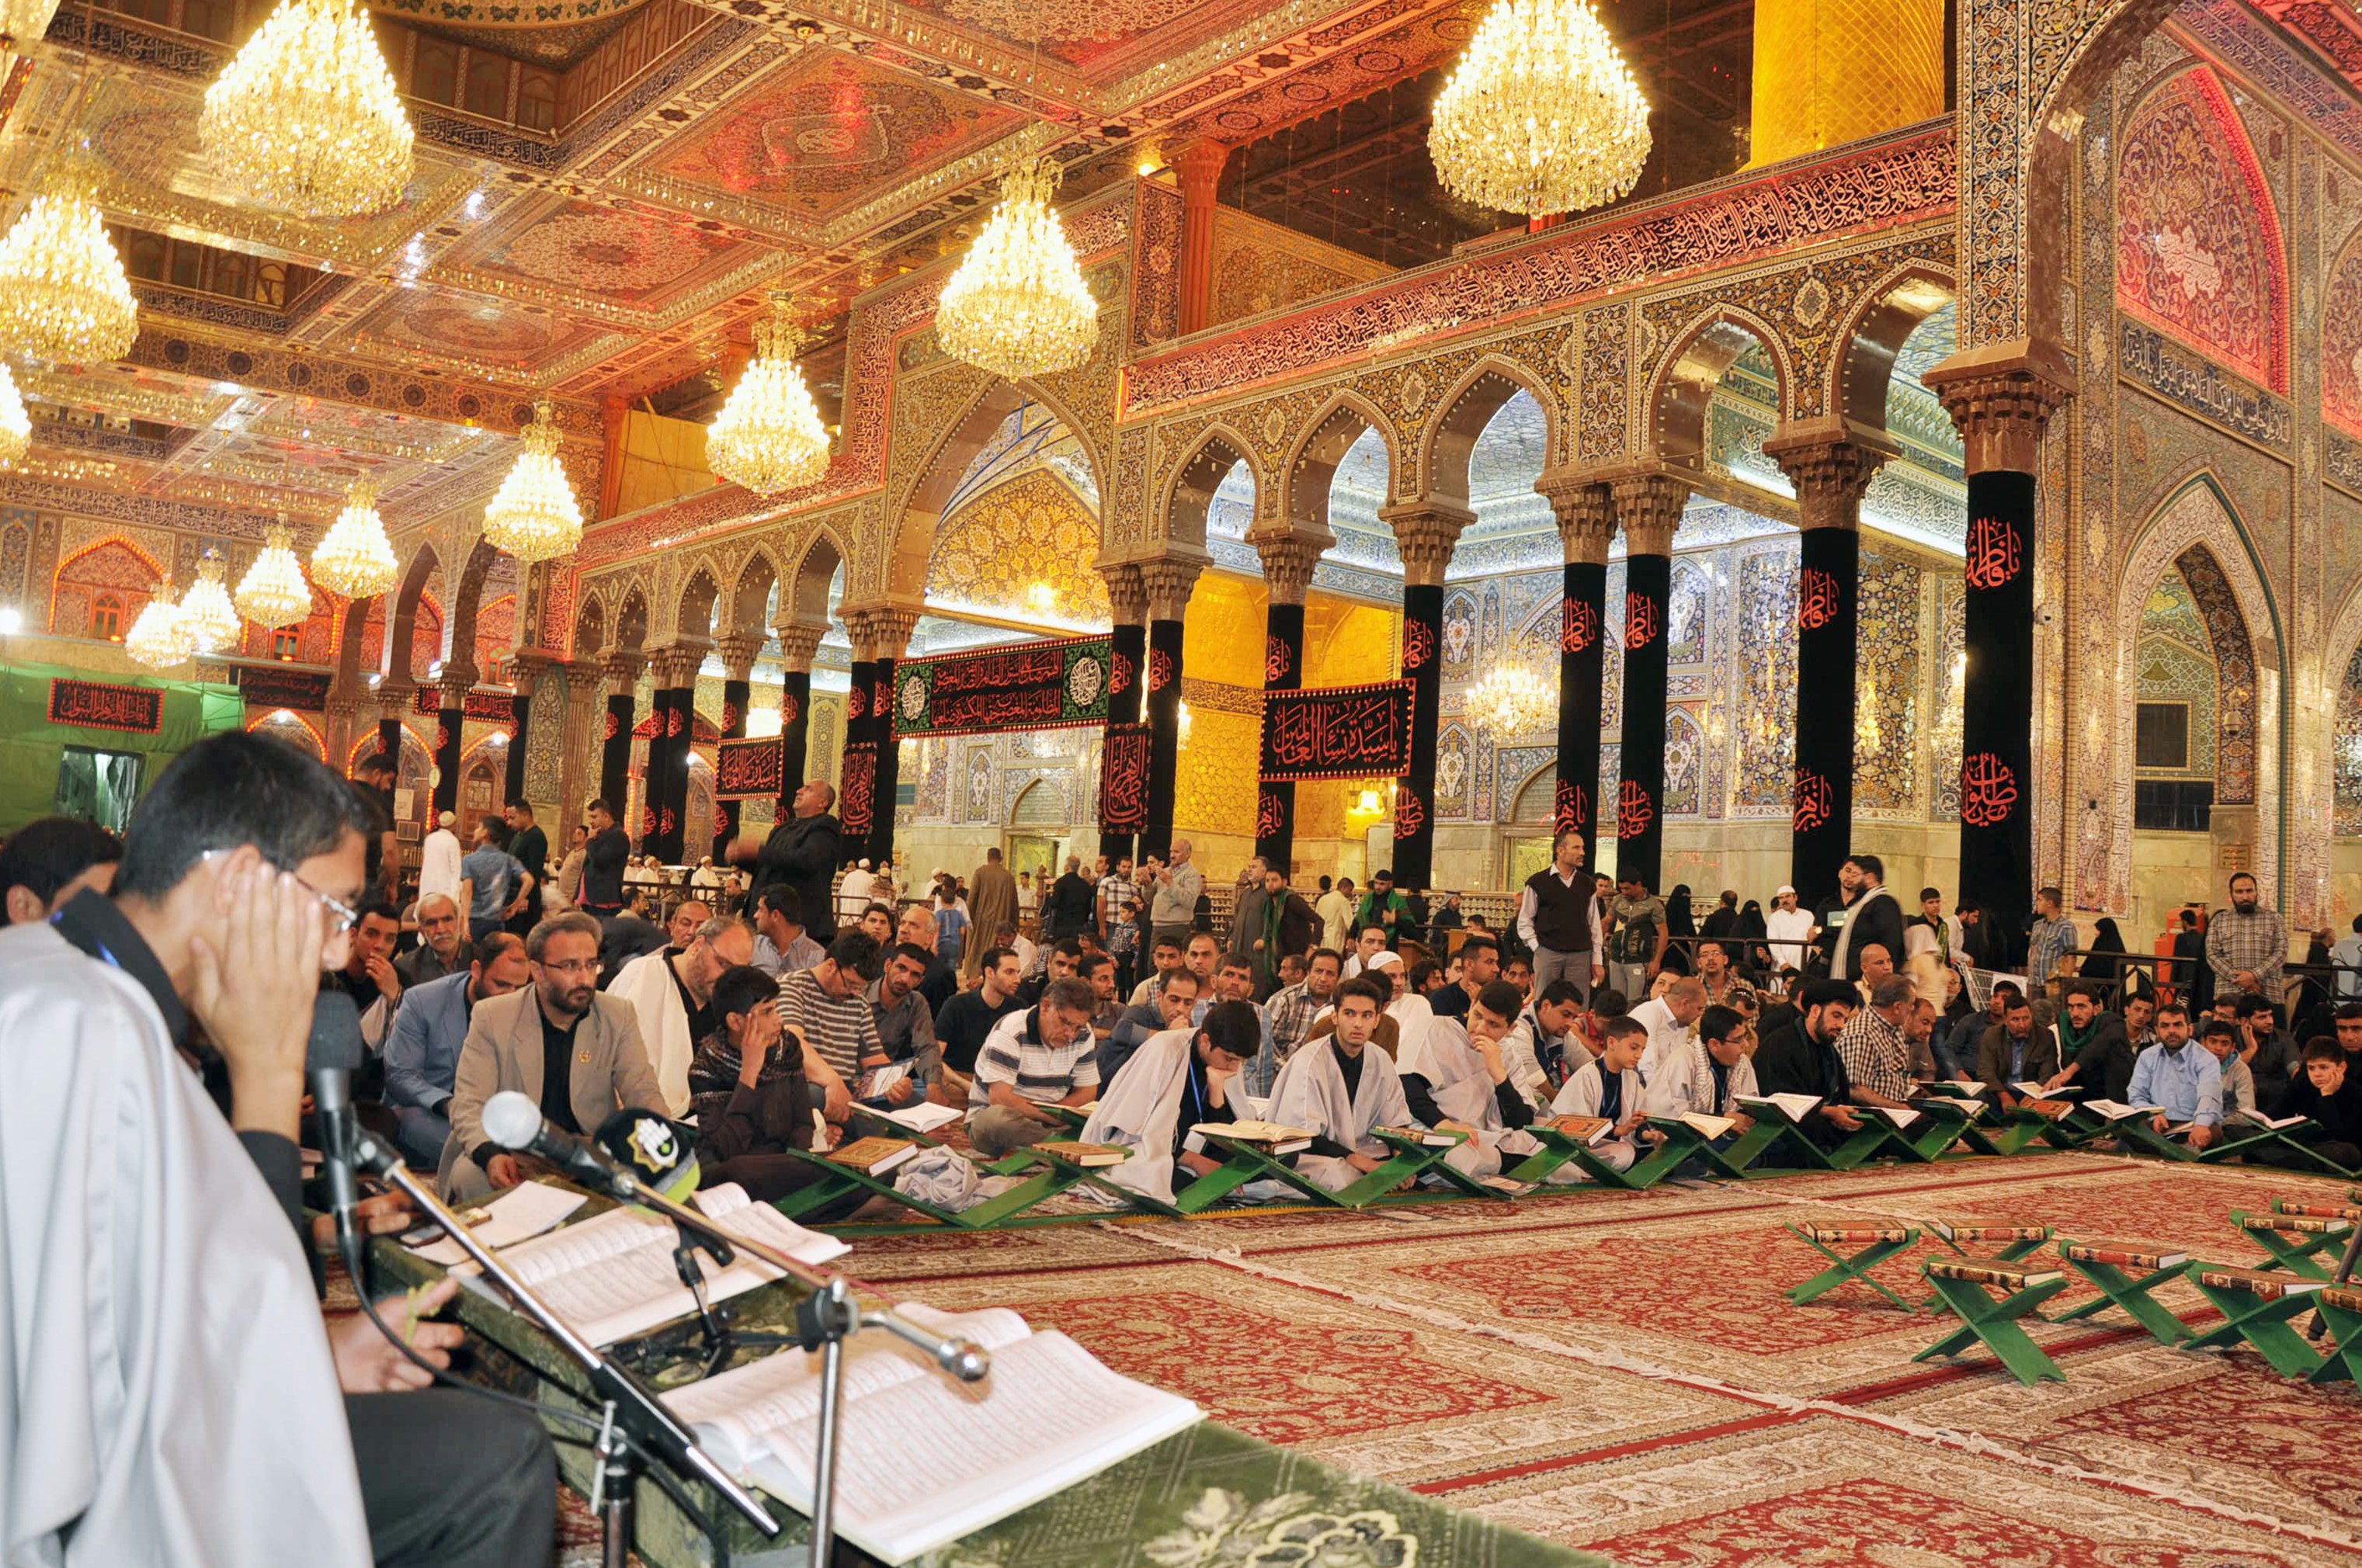 الصَّحنُ الحسينيّ الشّريف يحتضن أمسيةً قرآنيّةً عطرة أقامها معهدُ القرآنِ الكريمِ لقرّاء مشروع التّلاوة الوطنيّ في إيران